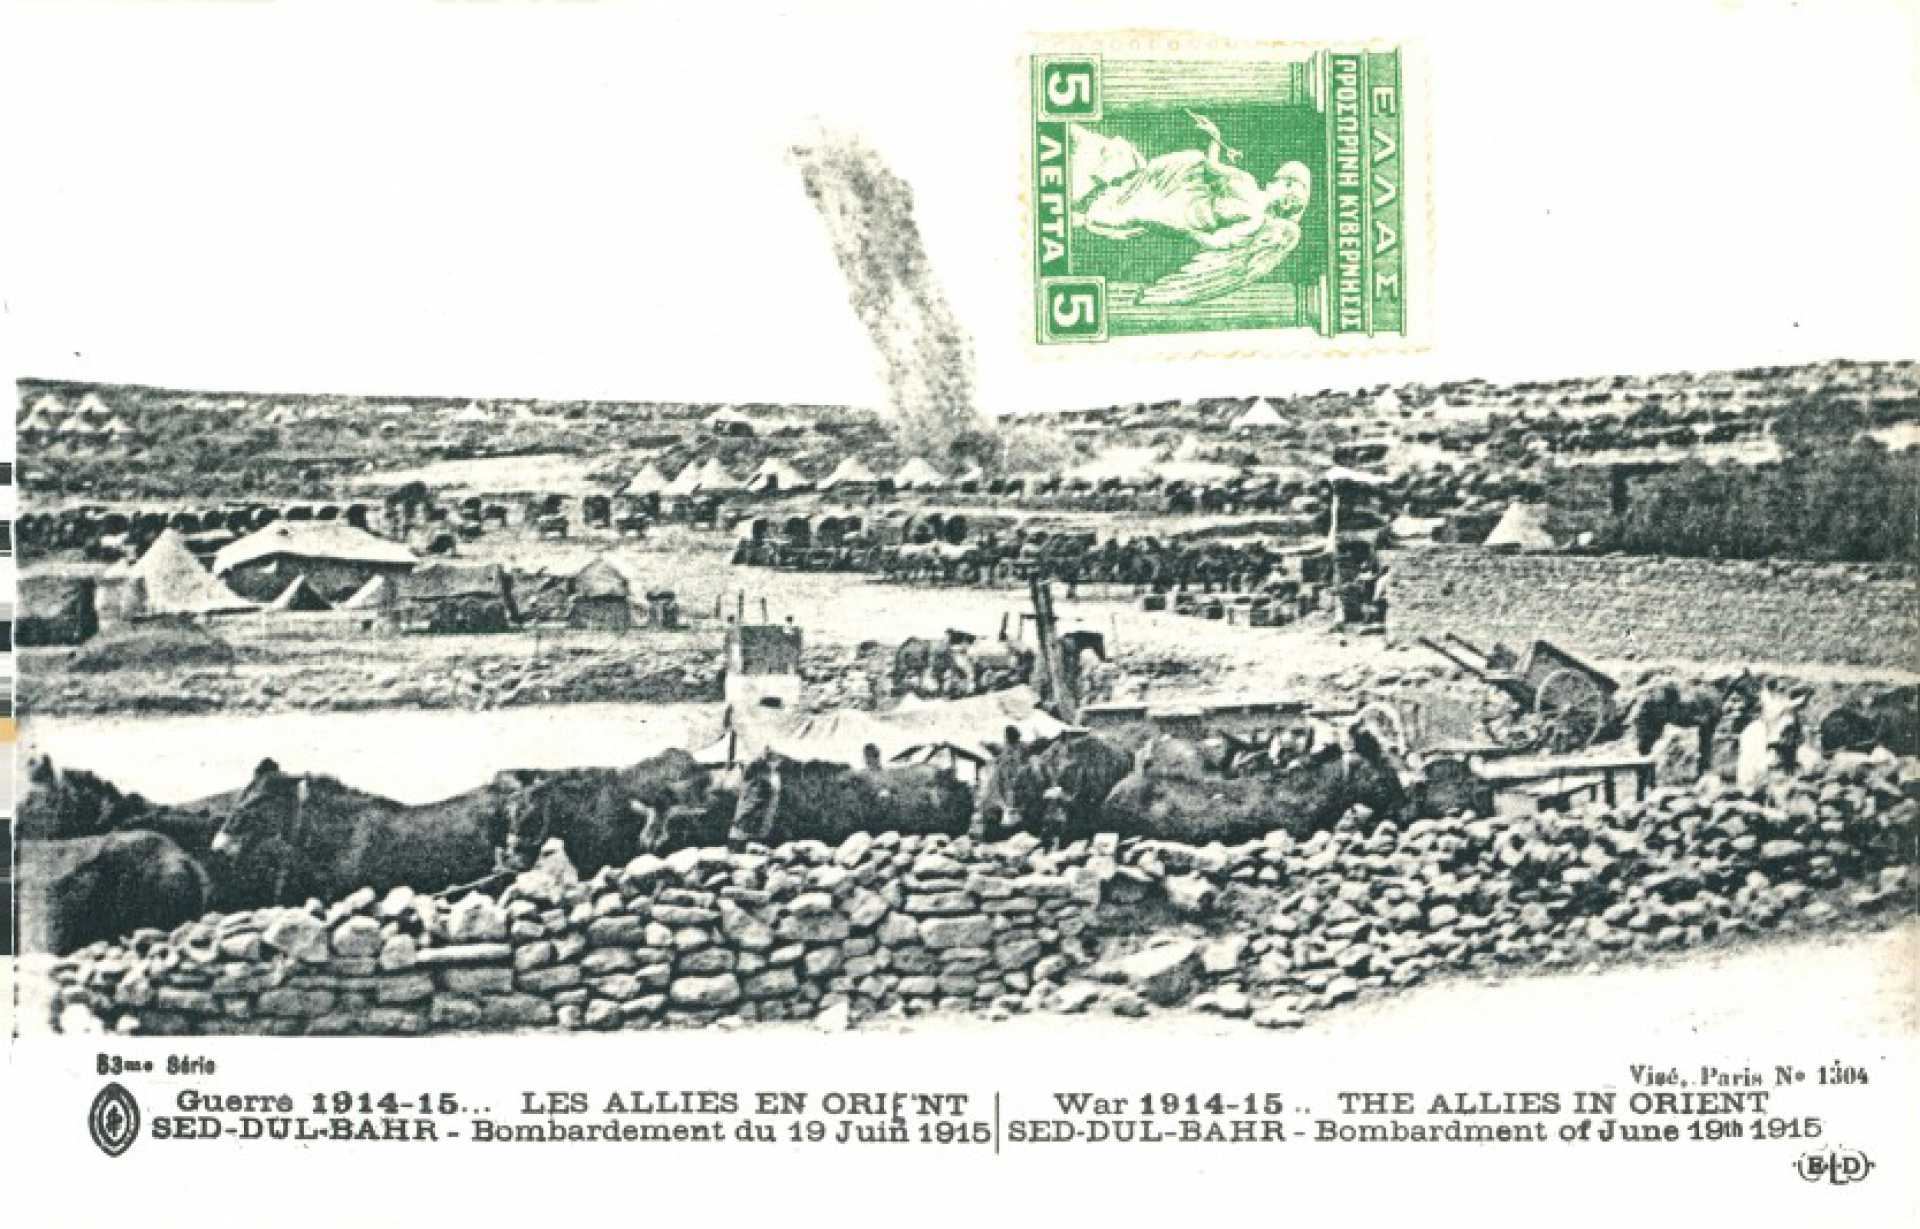 Guerre 1914-15… Les Allies en orient Sed-Dul-Bahr – Bombardement du 19 Juin 1915